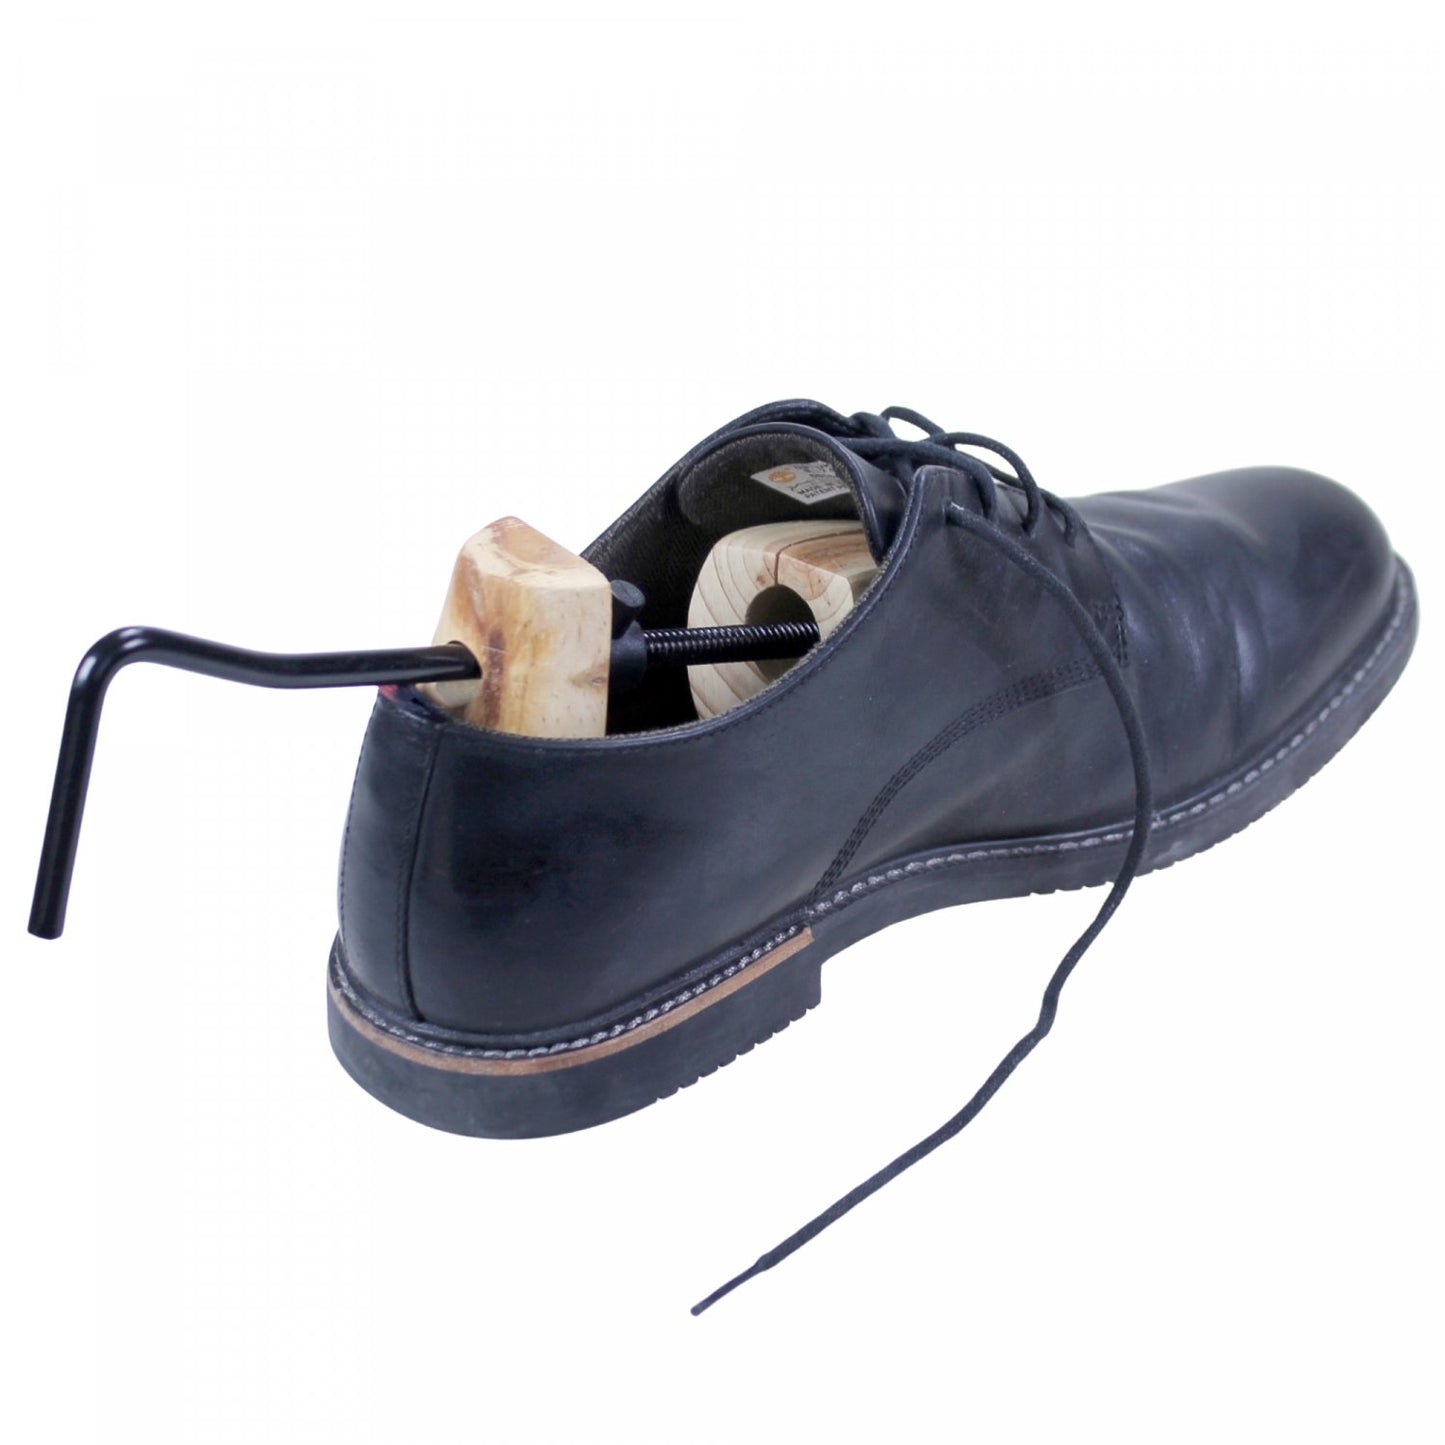 Genius Ideas GD-065500: 1-delige Schoenrek voor Dames - Schoenen Uitrekken en Comfortabel Dragen - Bivakshop